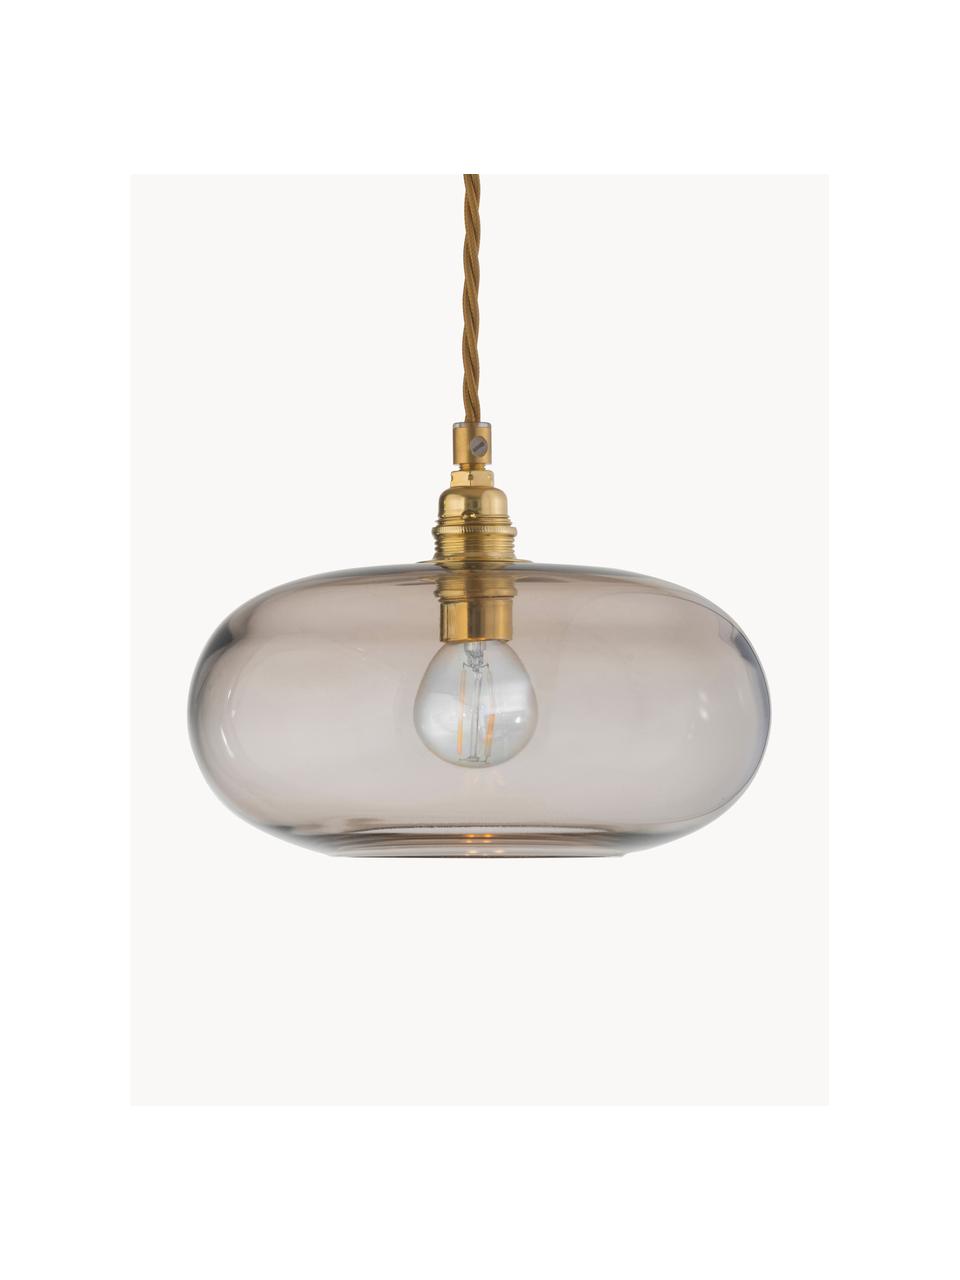 Lámpara de techo pequeño Horizon, Pantalla: vidrio tintado, Estructura: metal recubierto, Cable: cubierto en tela, Beige, dorado, Ø 21 x Al 14 cm